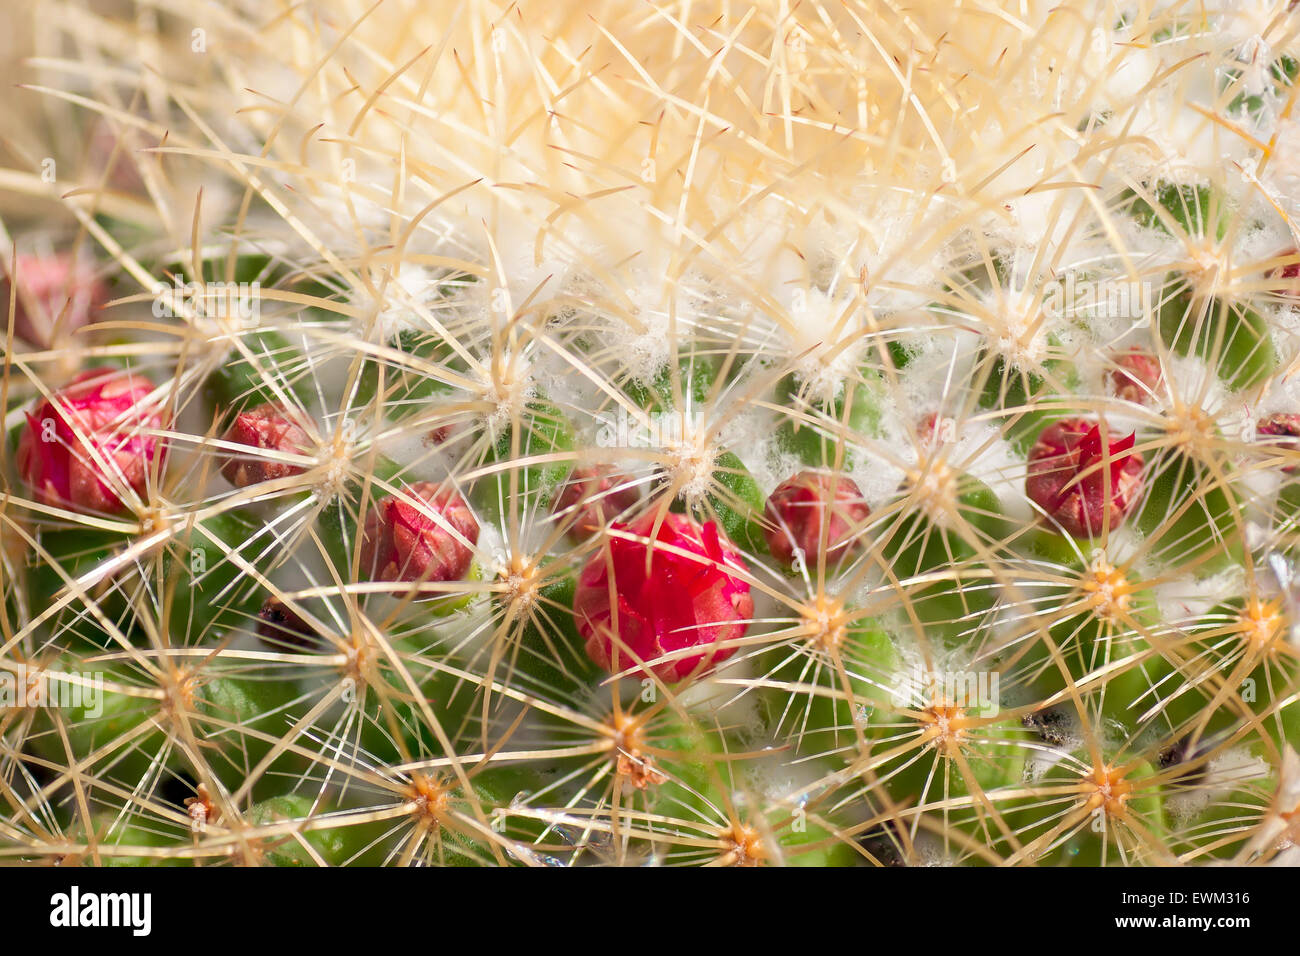 Cactus close up avec des fleurs rouges. Prises le 9 juin 2015. Banque D'Images